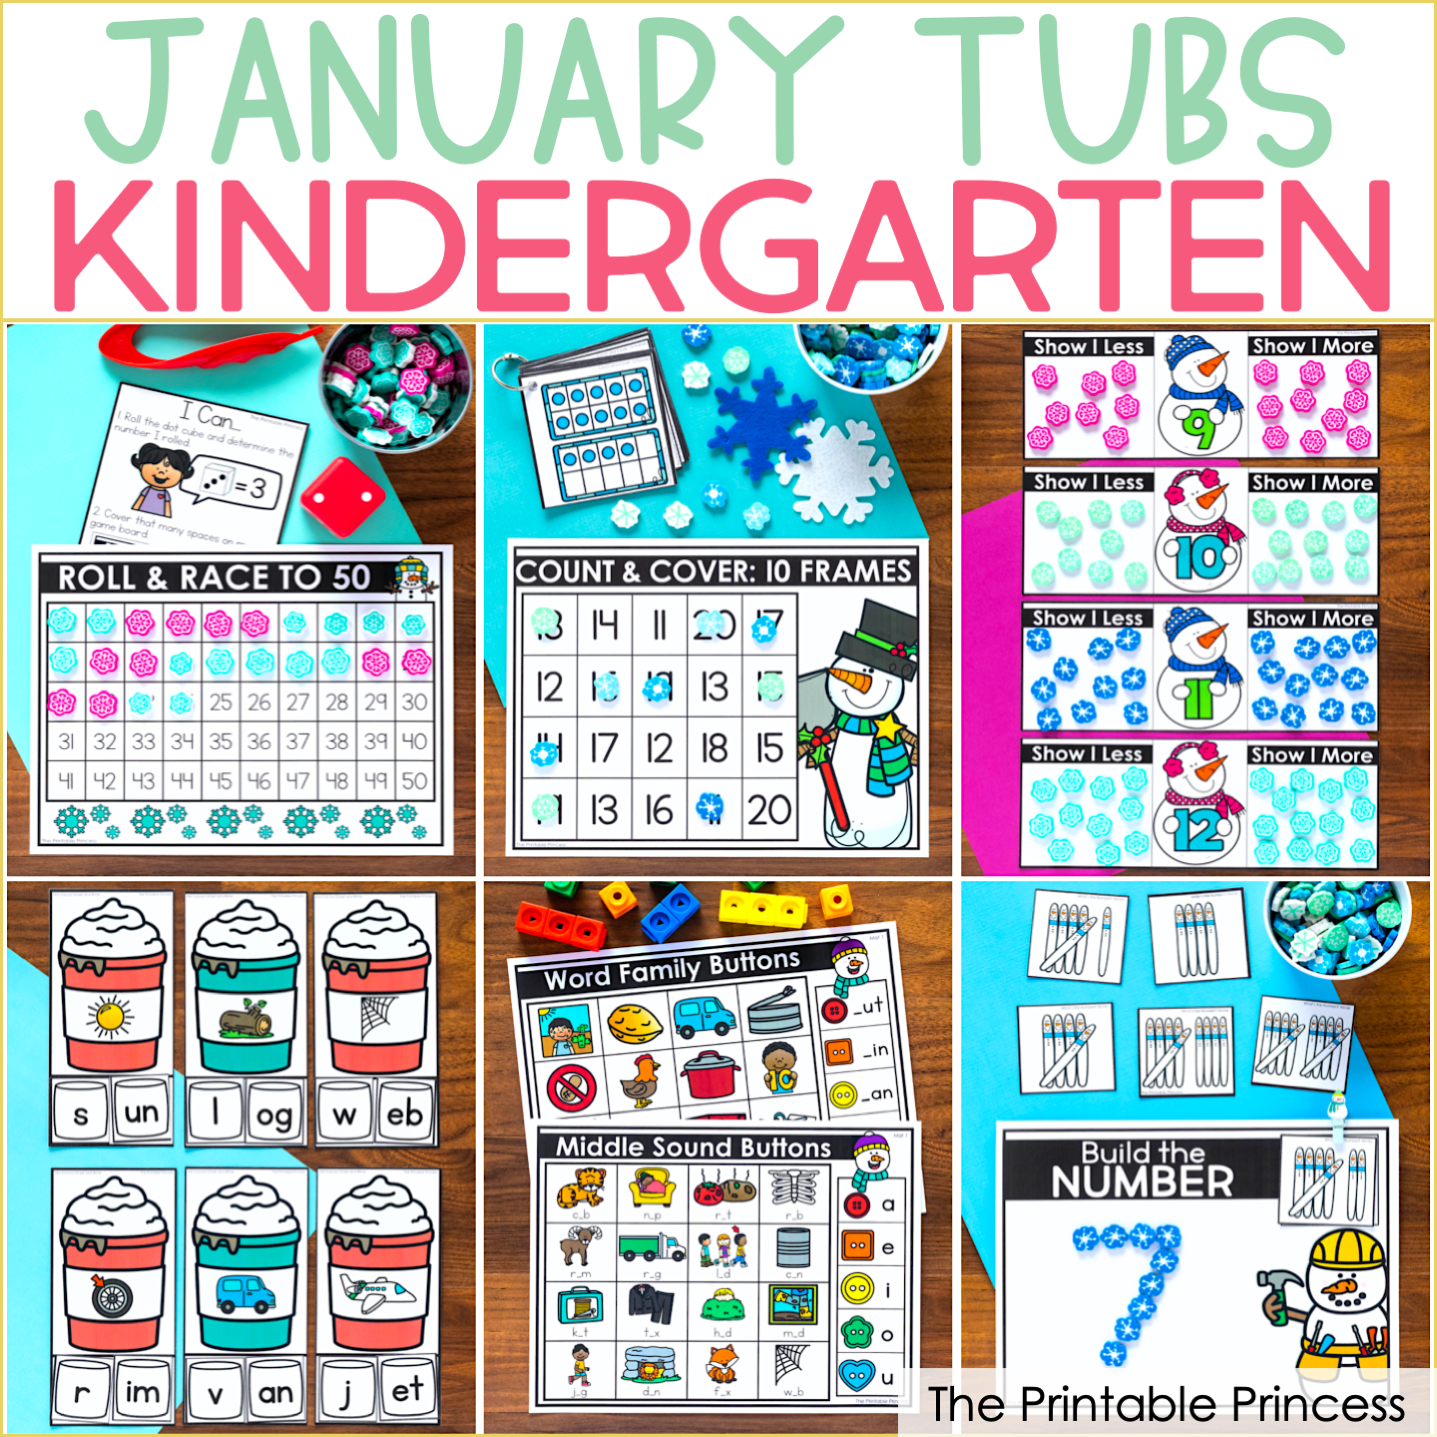 January Morning Tubs for Kindergarten